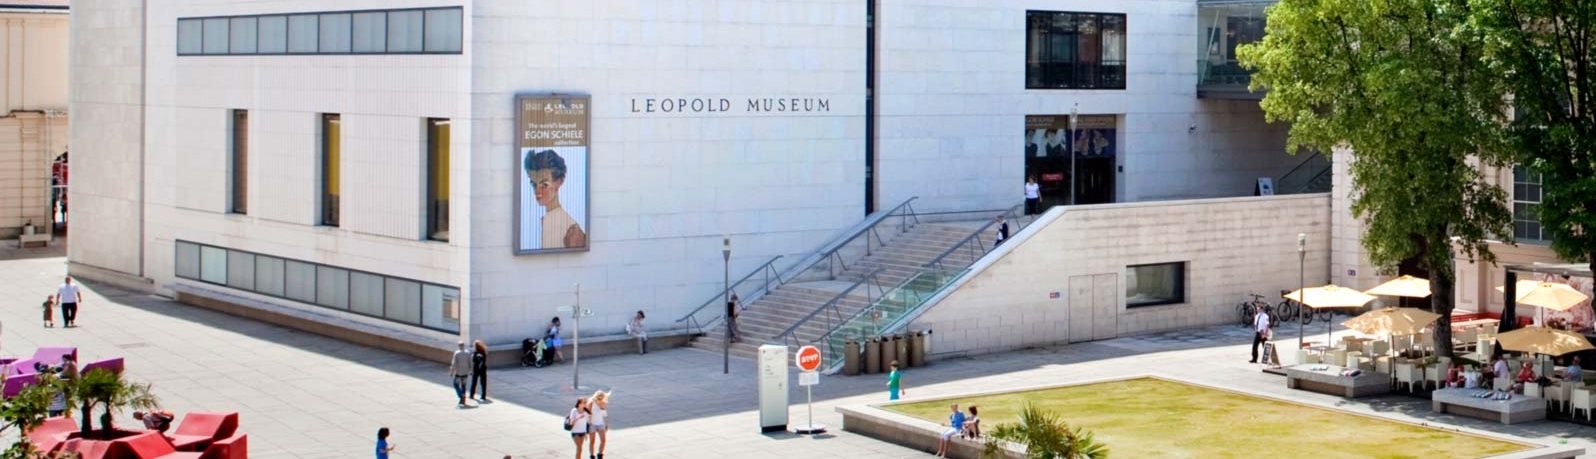 Музей Леопольда